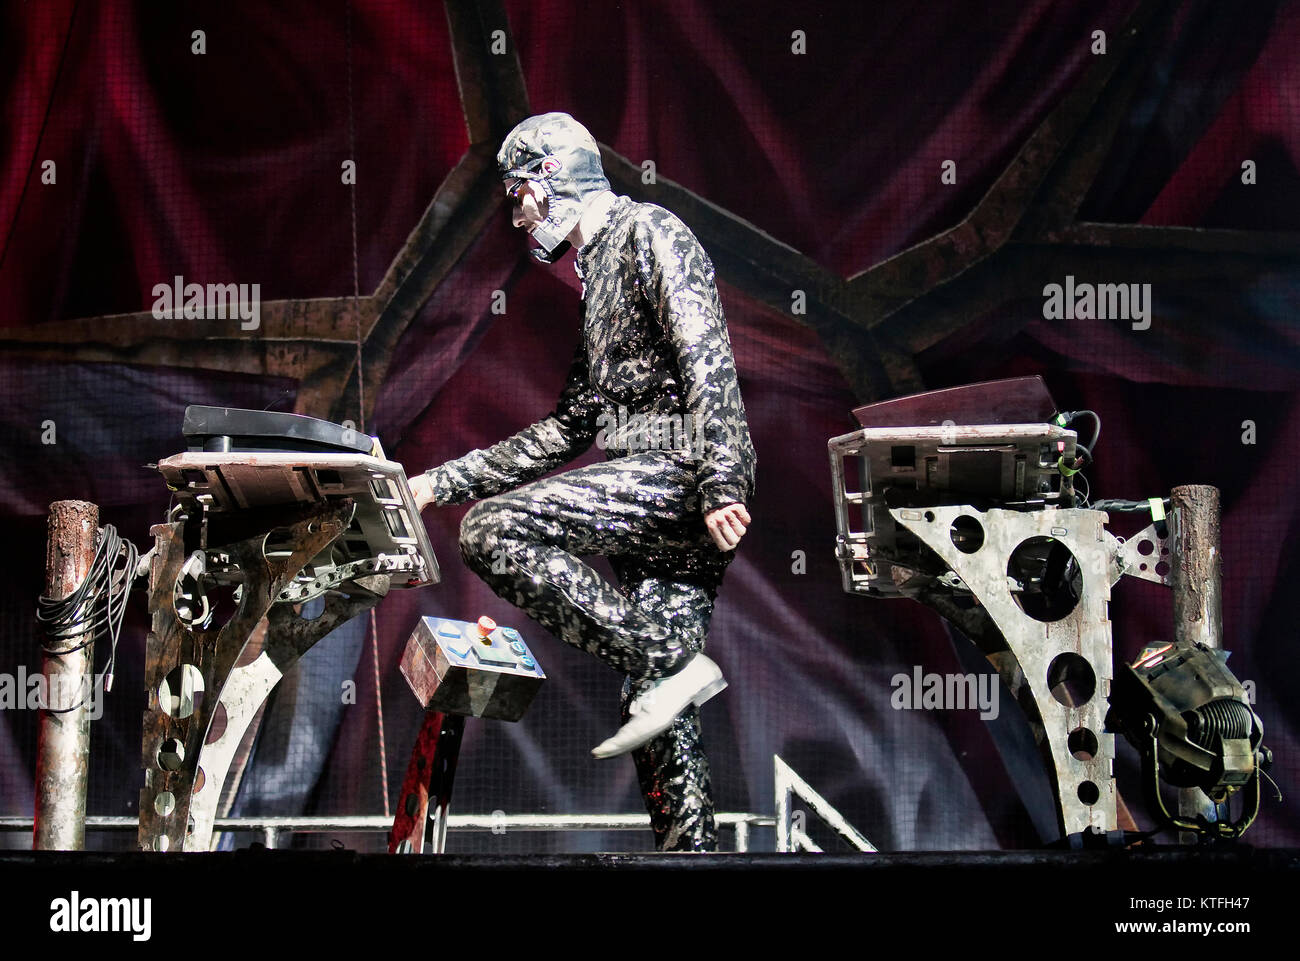 Rammstein, le groupe de metal industriel allemand, effectue un concert live  at Vallhall Arena à Oslo. Ici Christian 'Flake' musicien Lorenz sur clavier  est vu sur scène. La Norvège, 19/02 2012 Photo